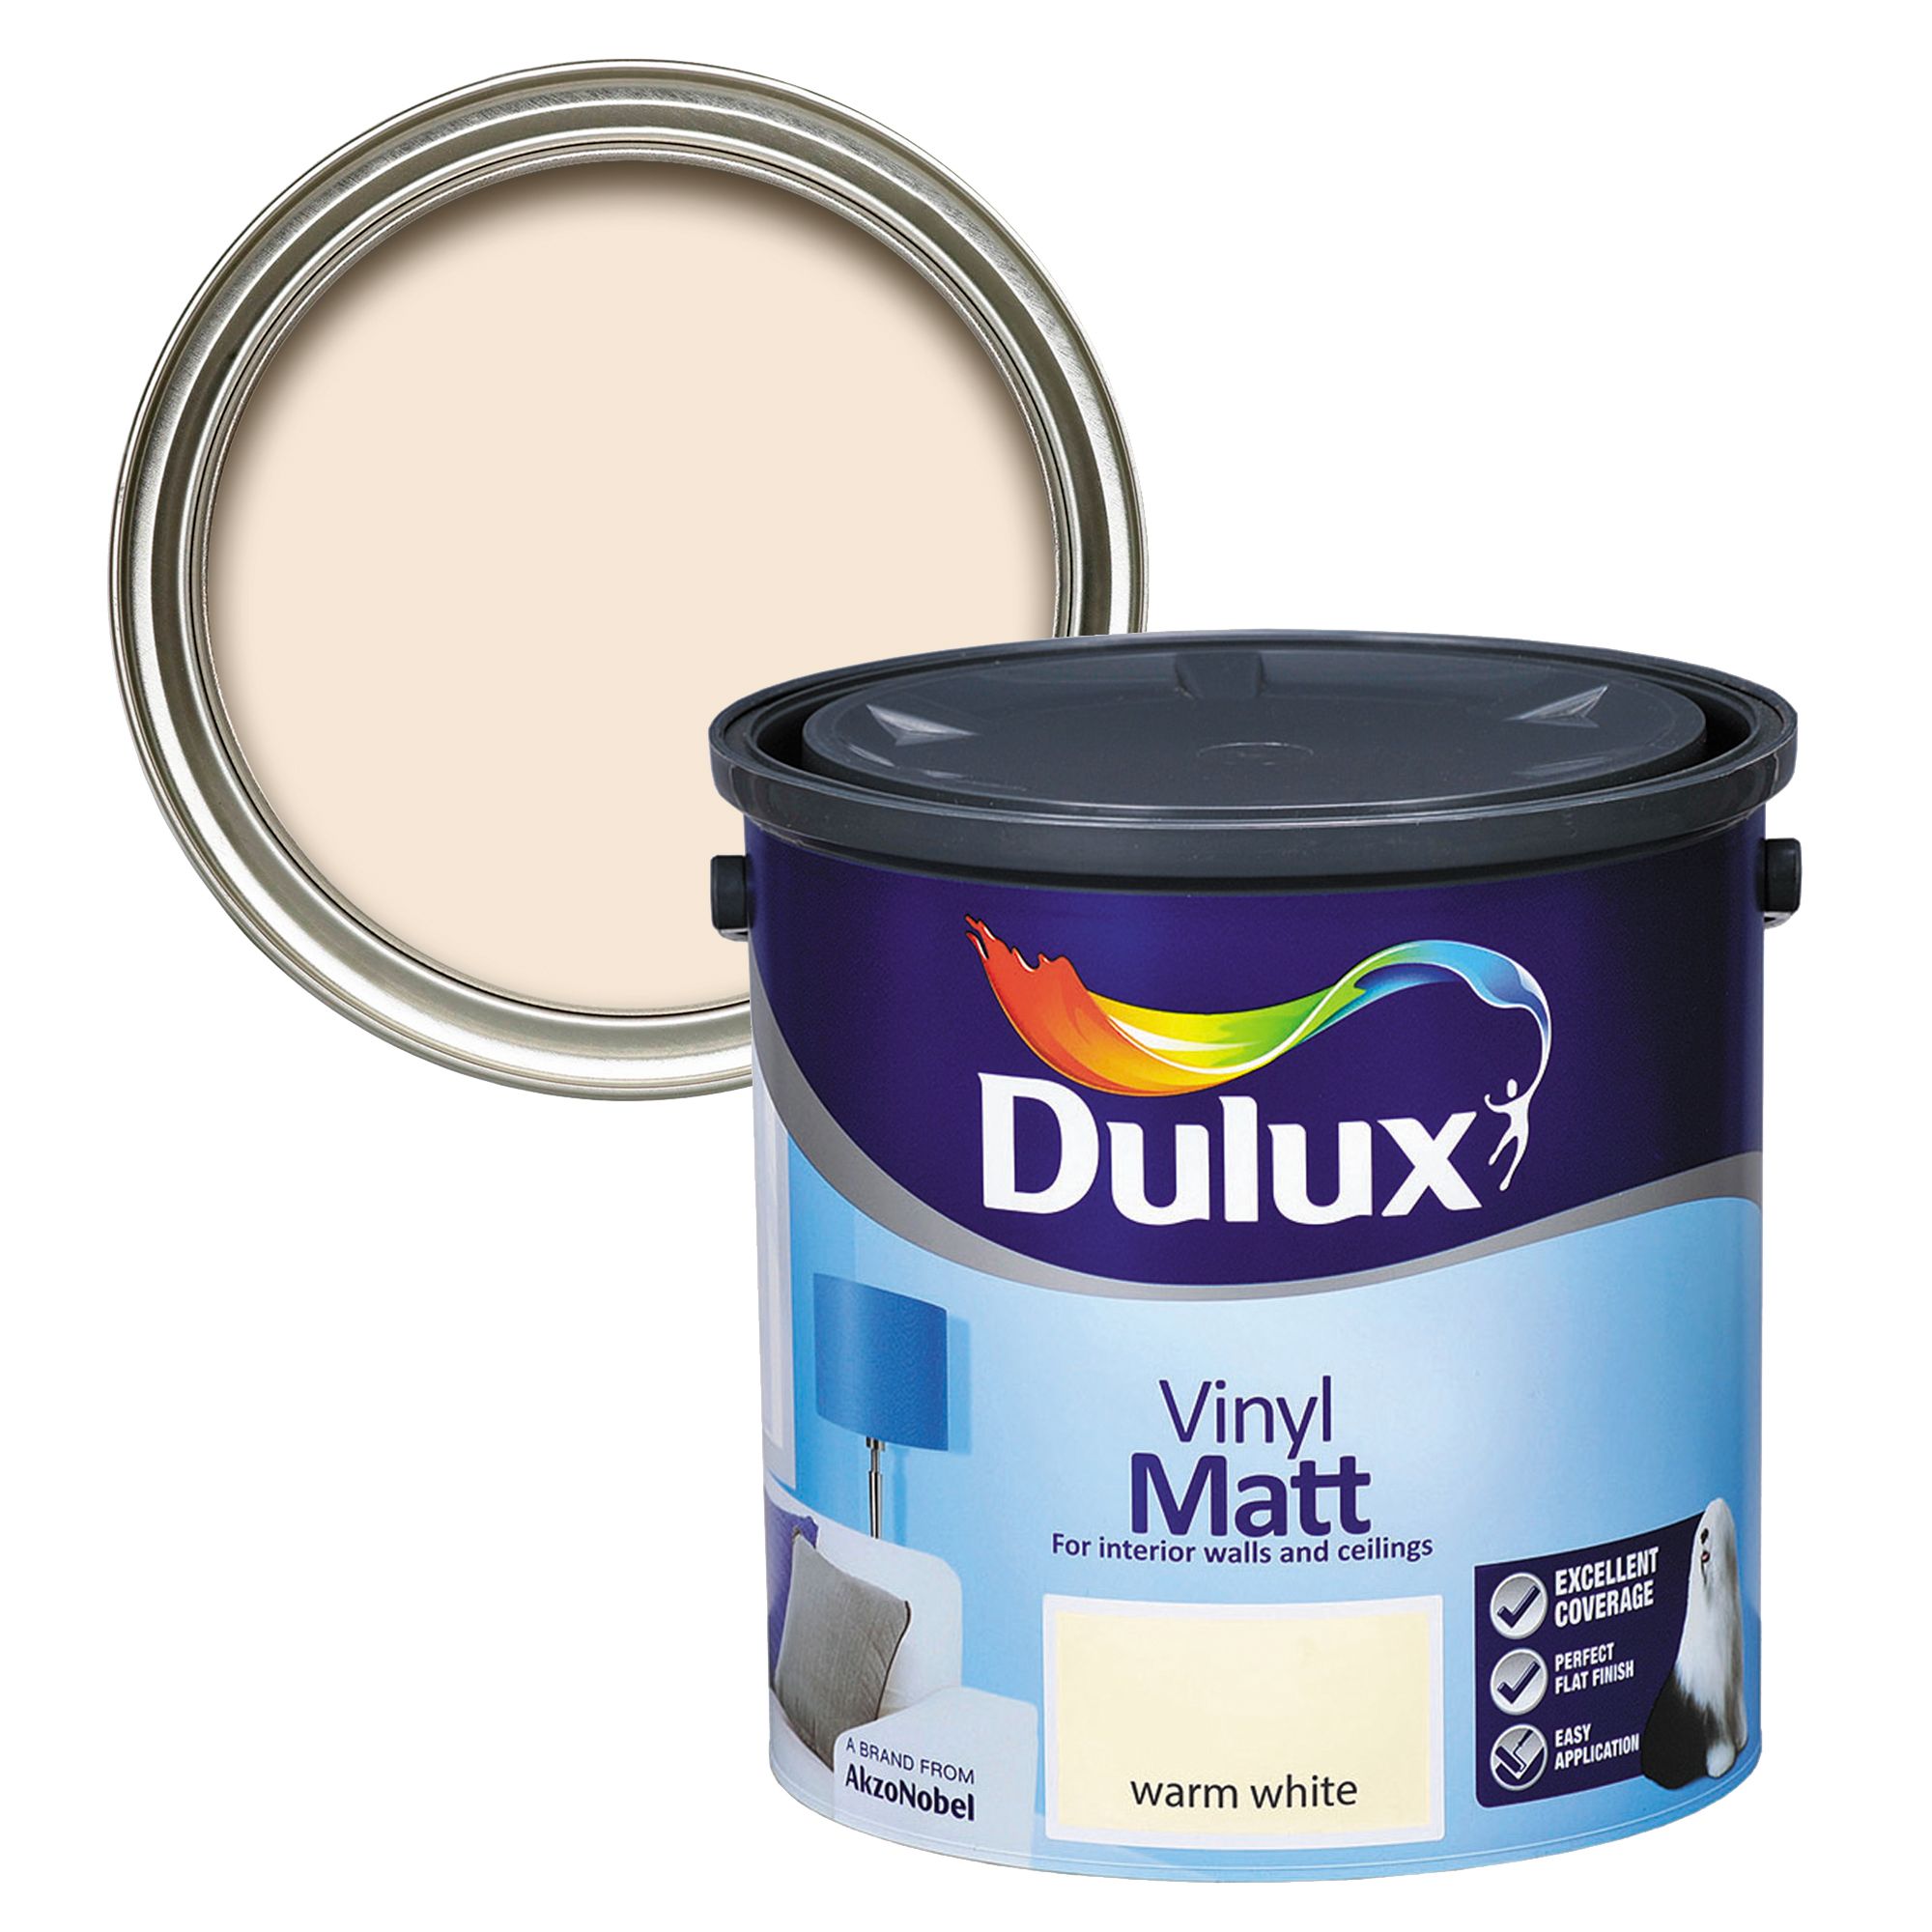 Dulux Warm white Vinyl matt Emulsion paint, 2.5L